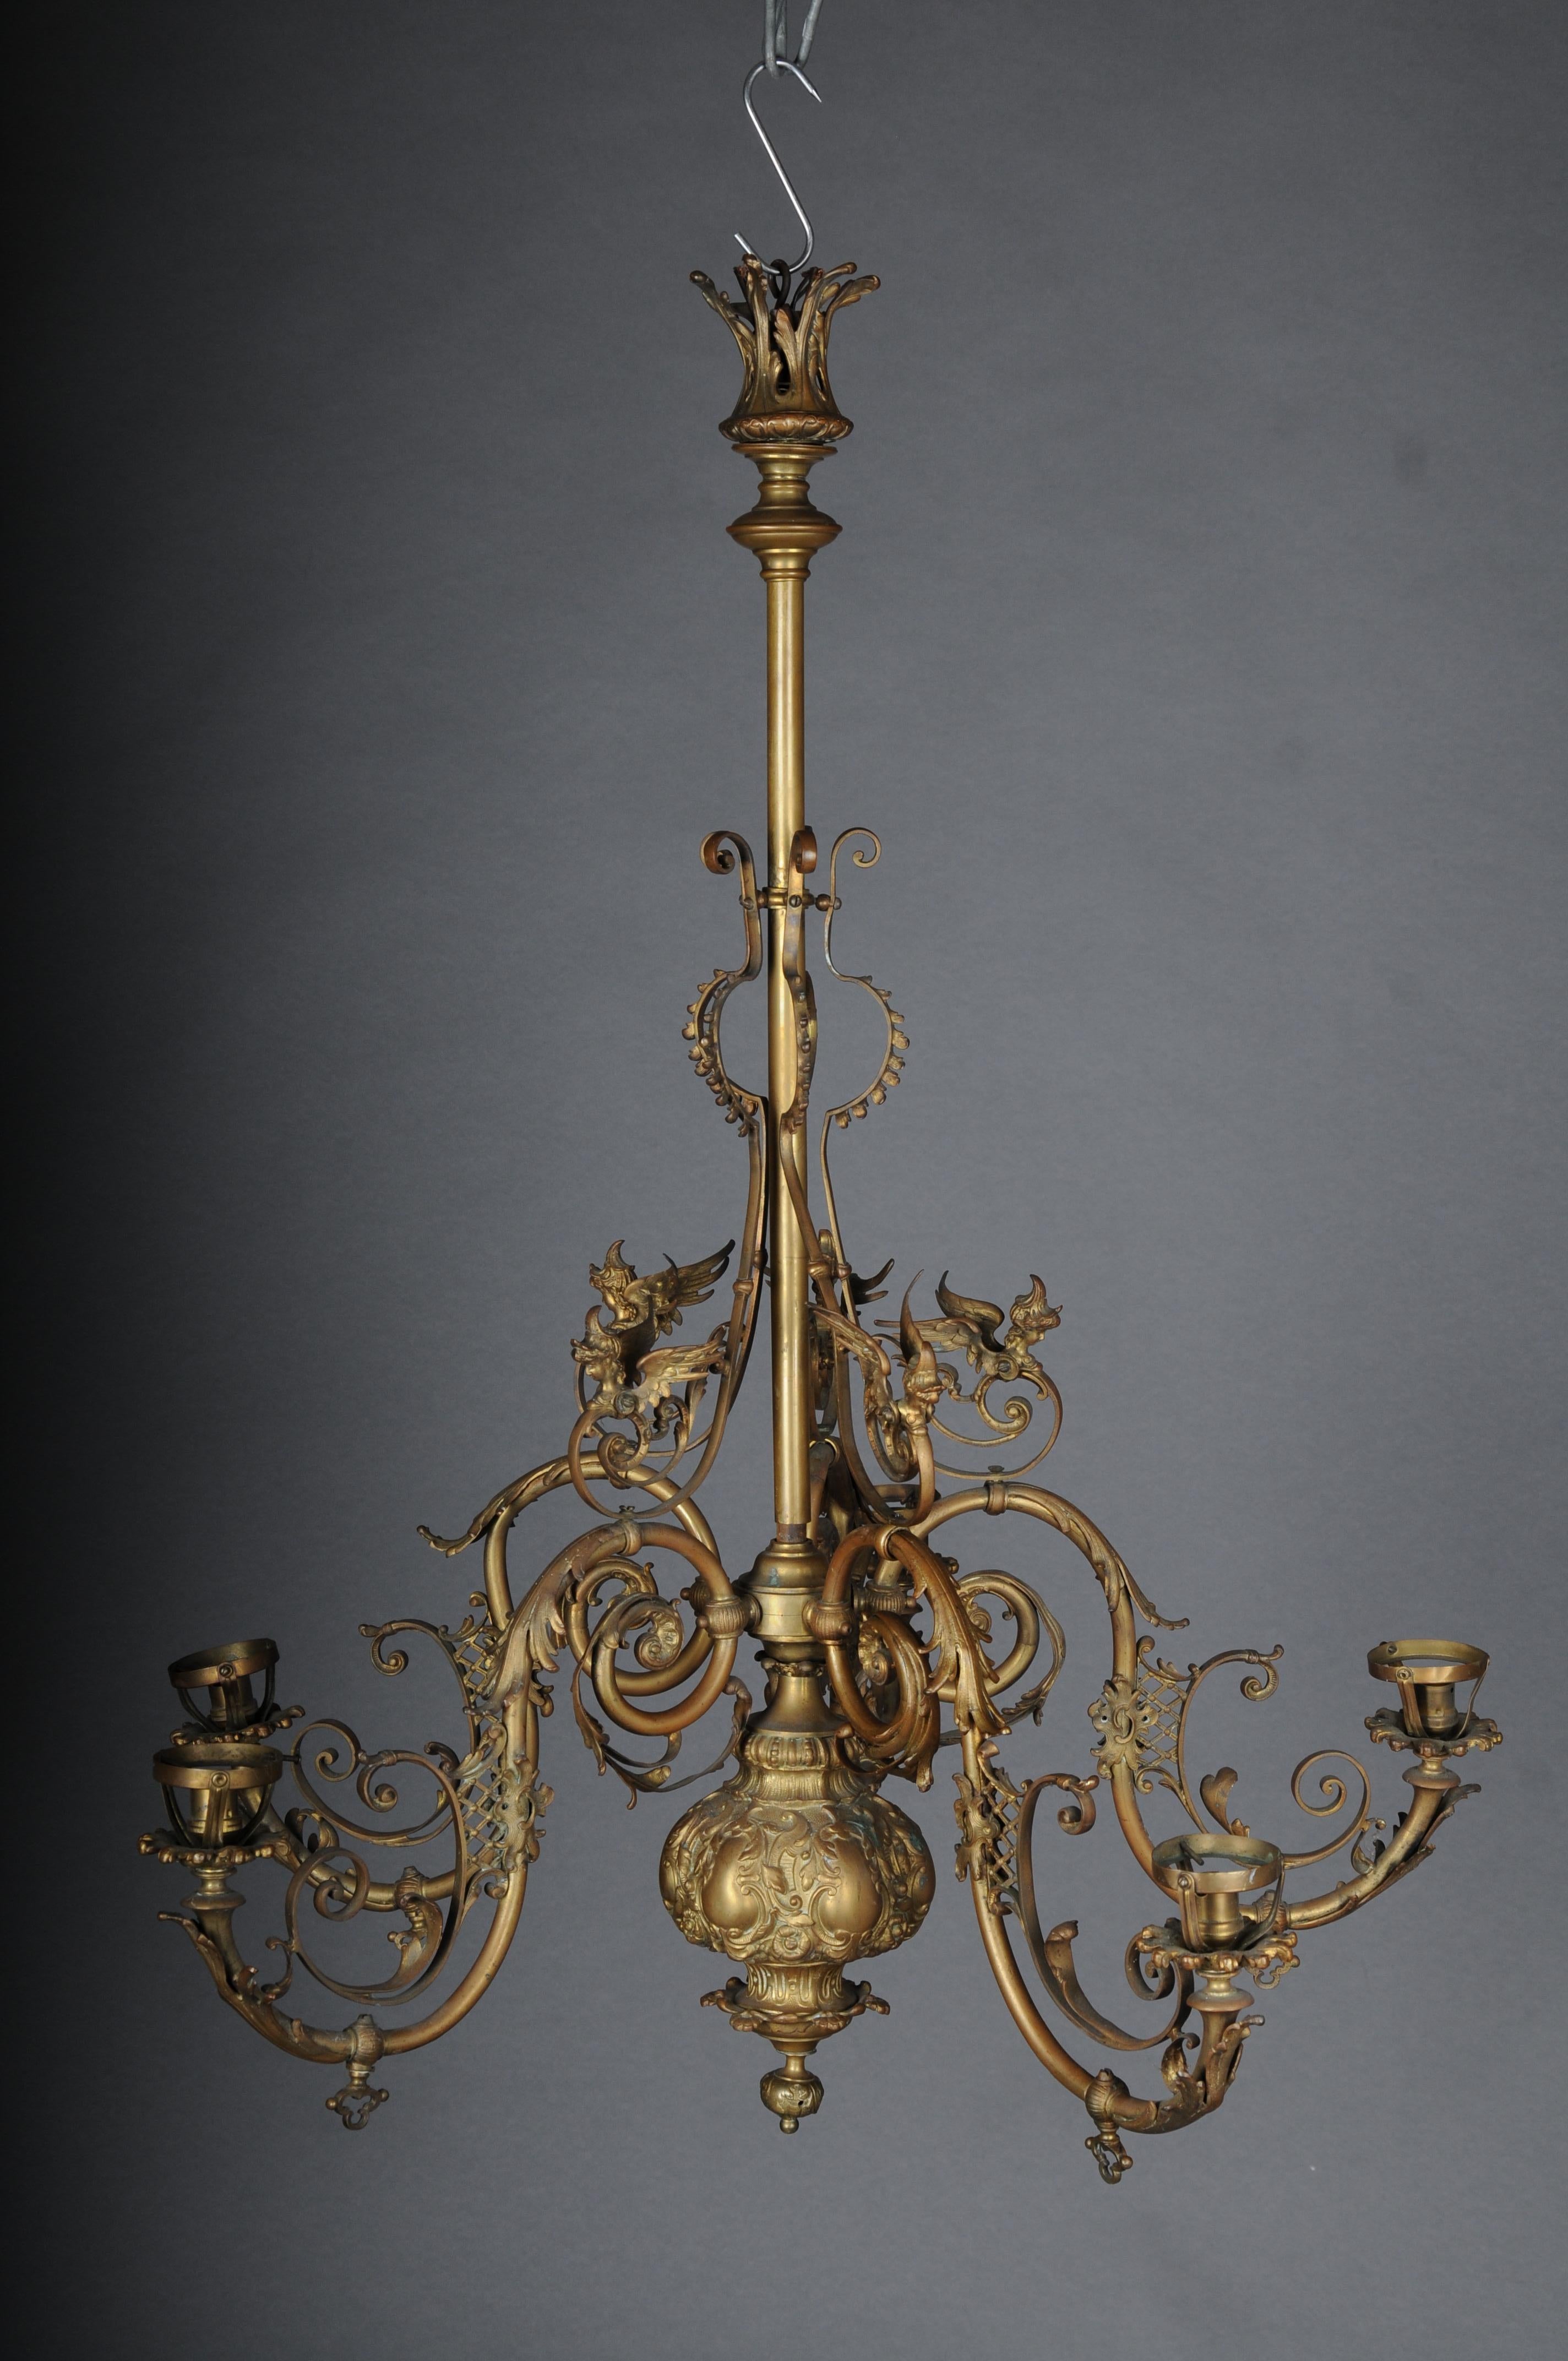 Antiker prächtiger Kronleuchter, Bronze, Gold um 1860.

Voluminöser Körper mit geschwungenen Lichtarmen. 4 leichte Arme.